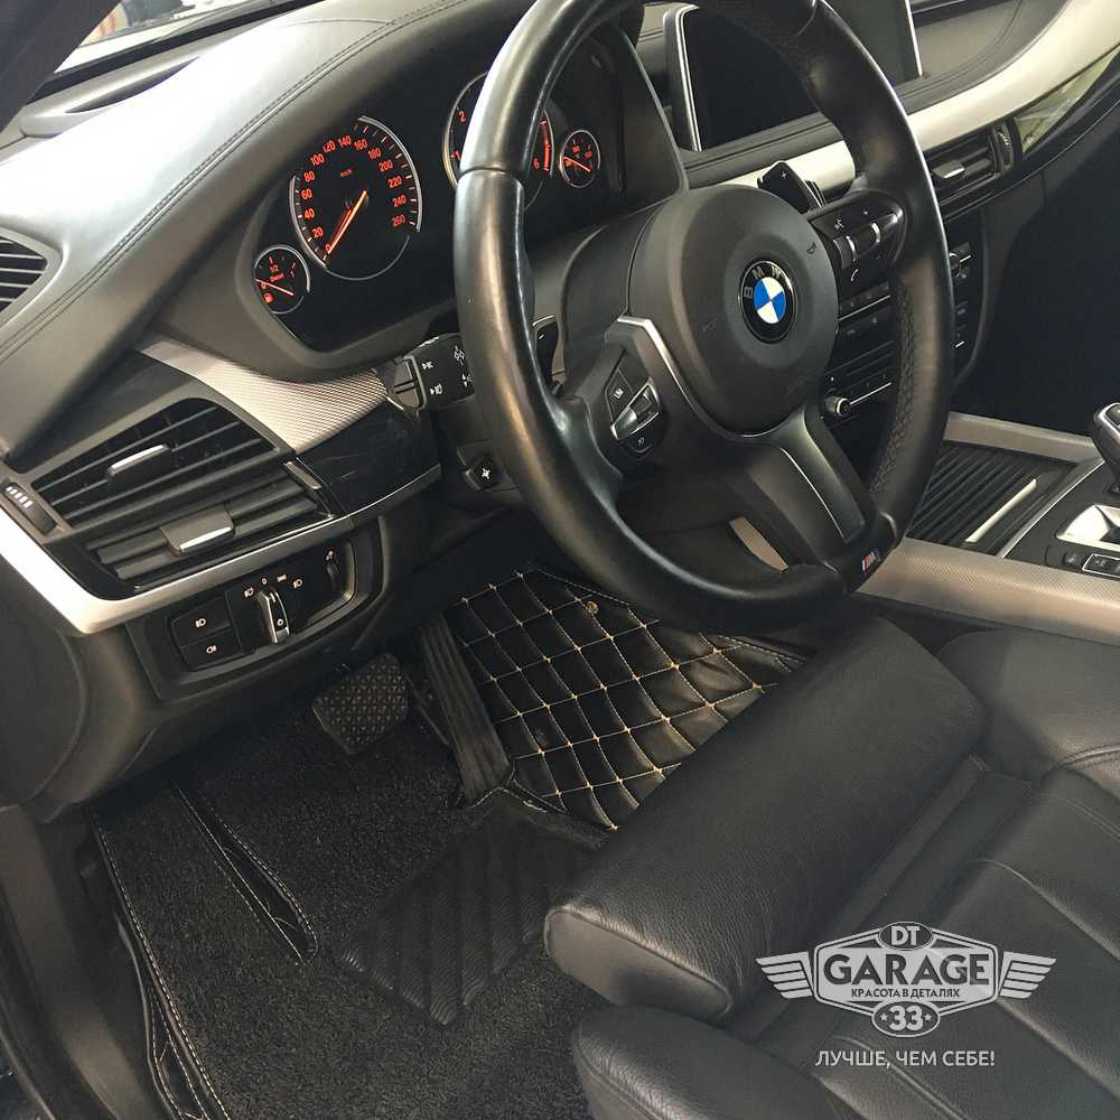 На фото салона машины BMW X5 после химчистки в DT GARAGE 33.